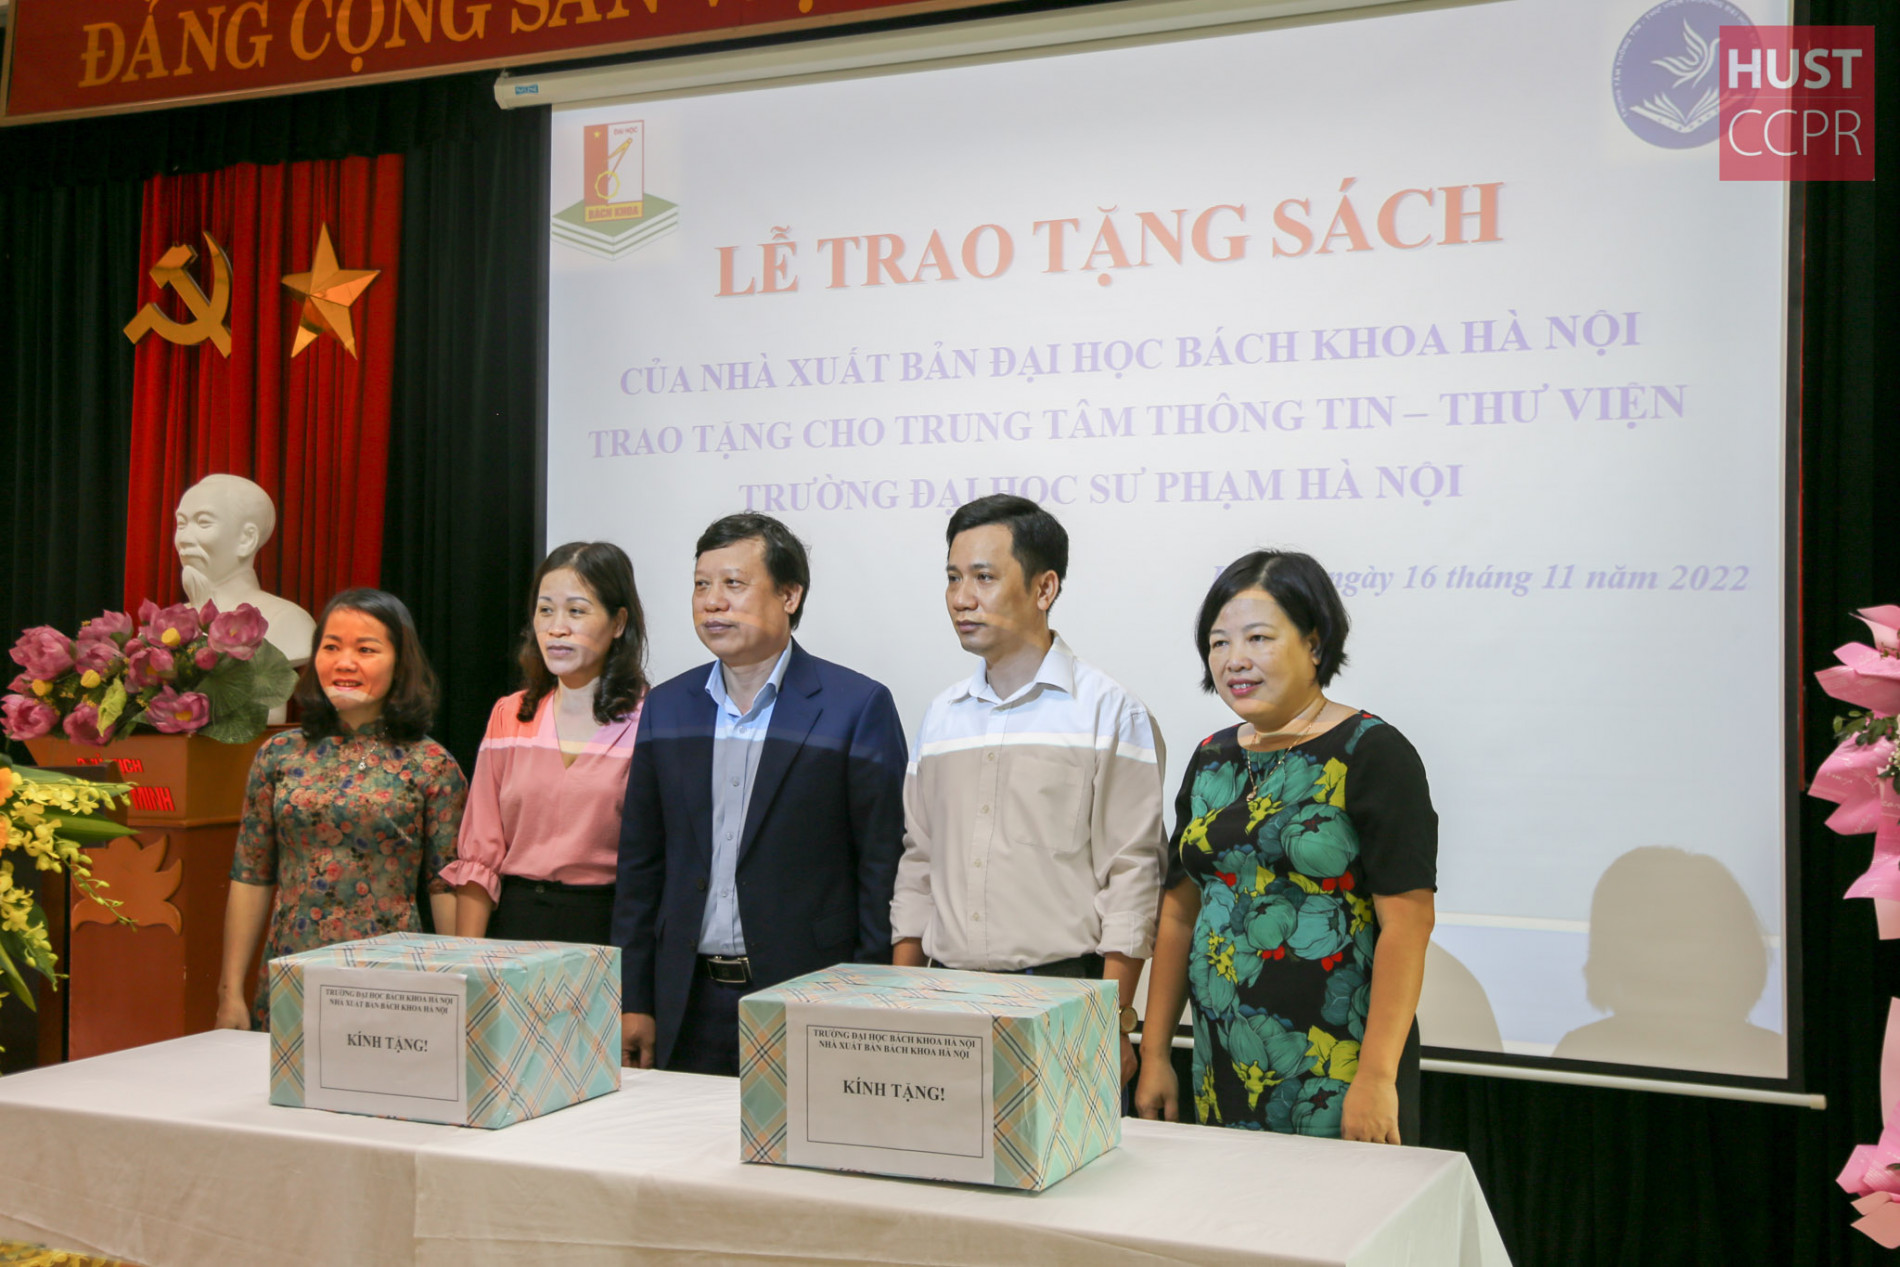 Bách khoa Hà Nội tặng sách cho Đại học Sư phạm Hà Nội